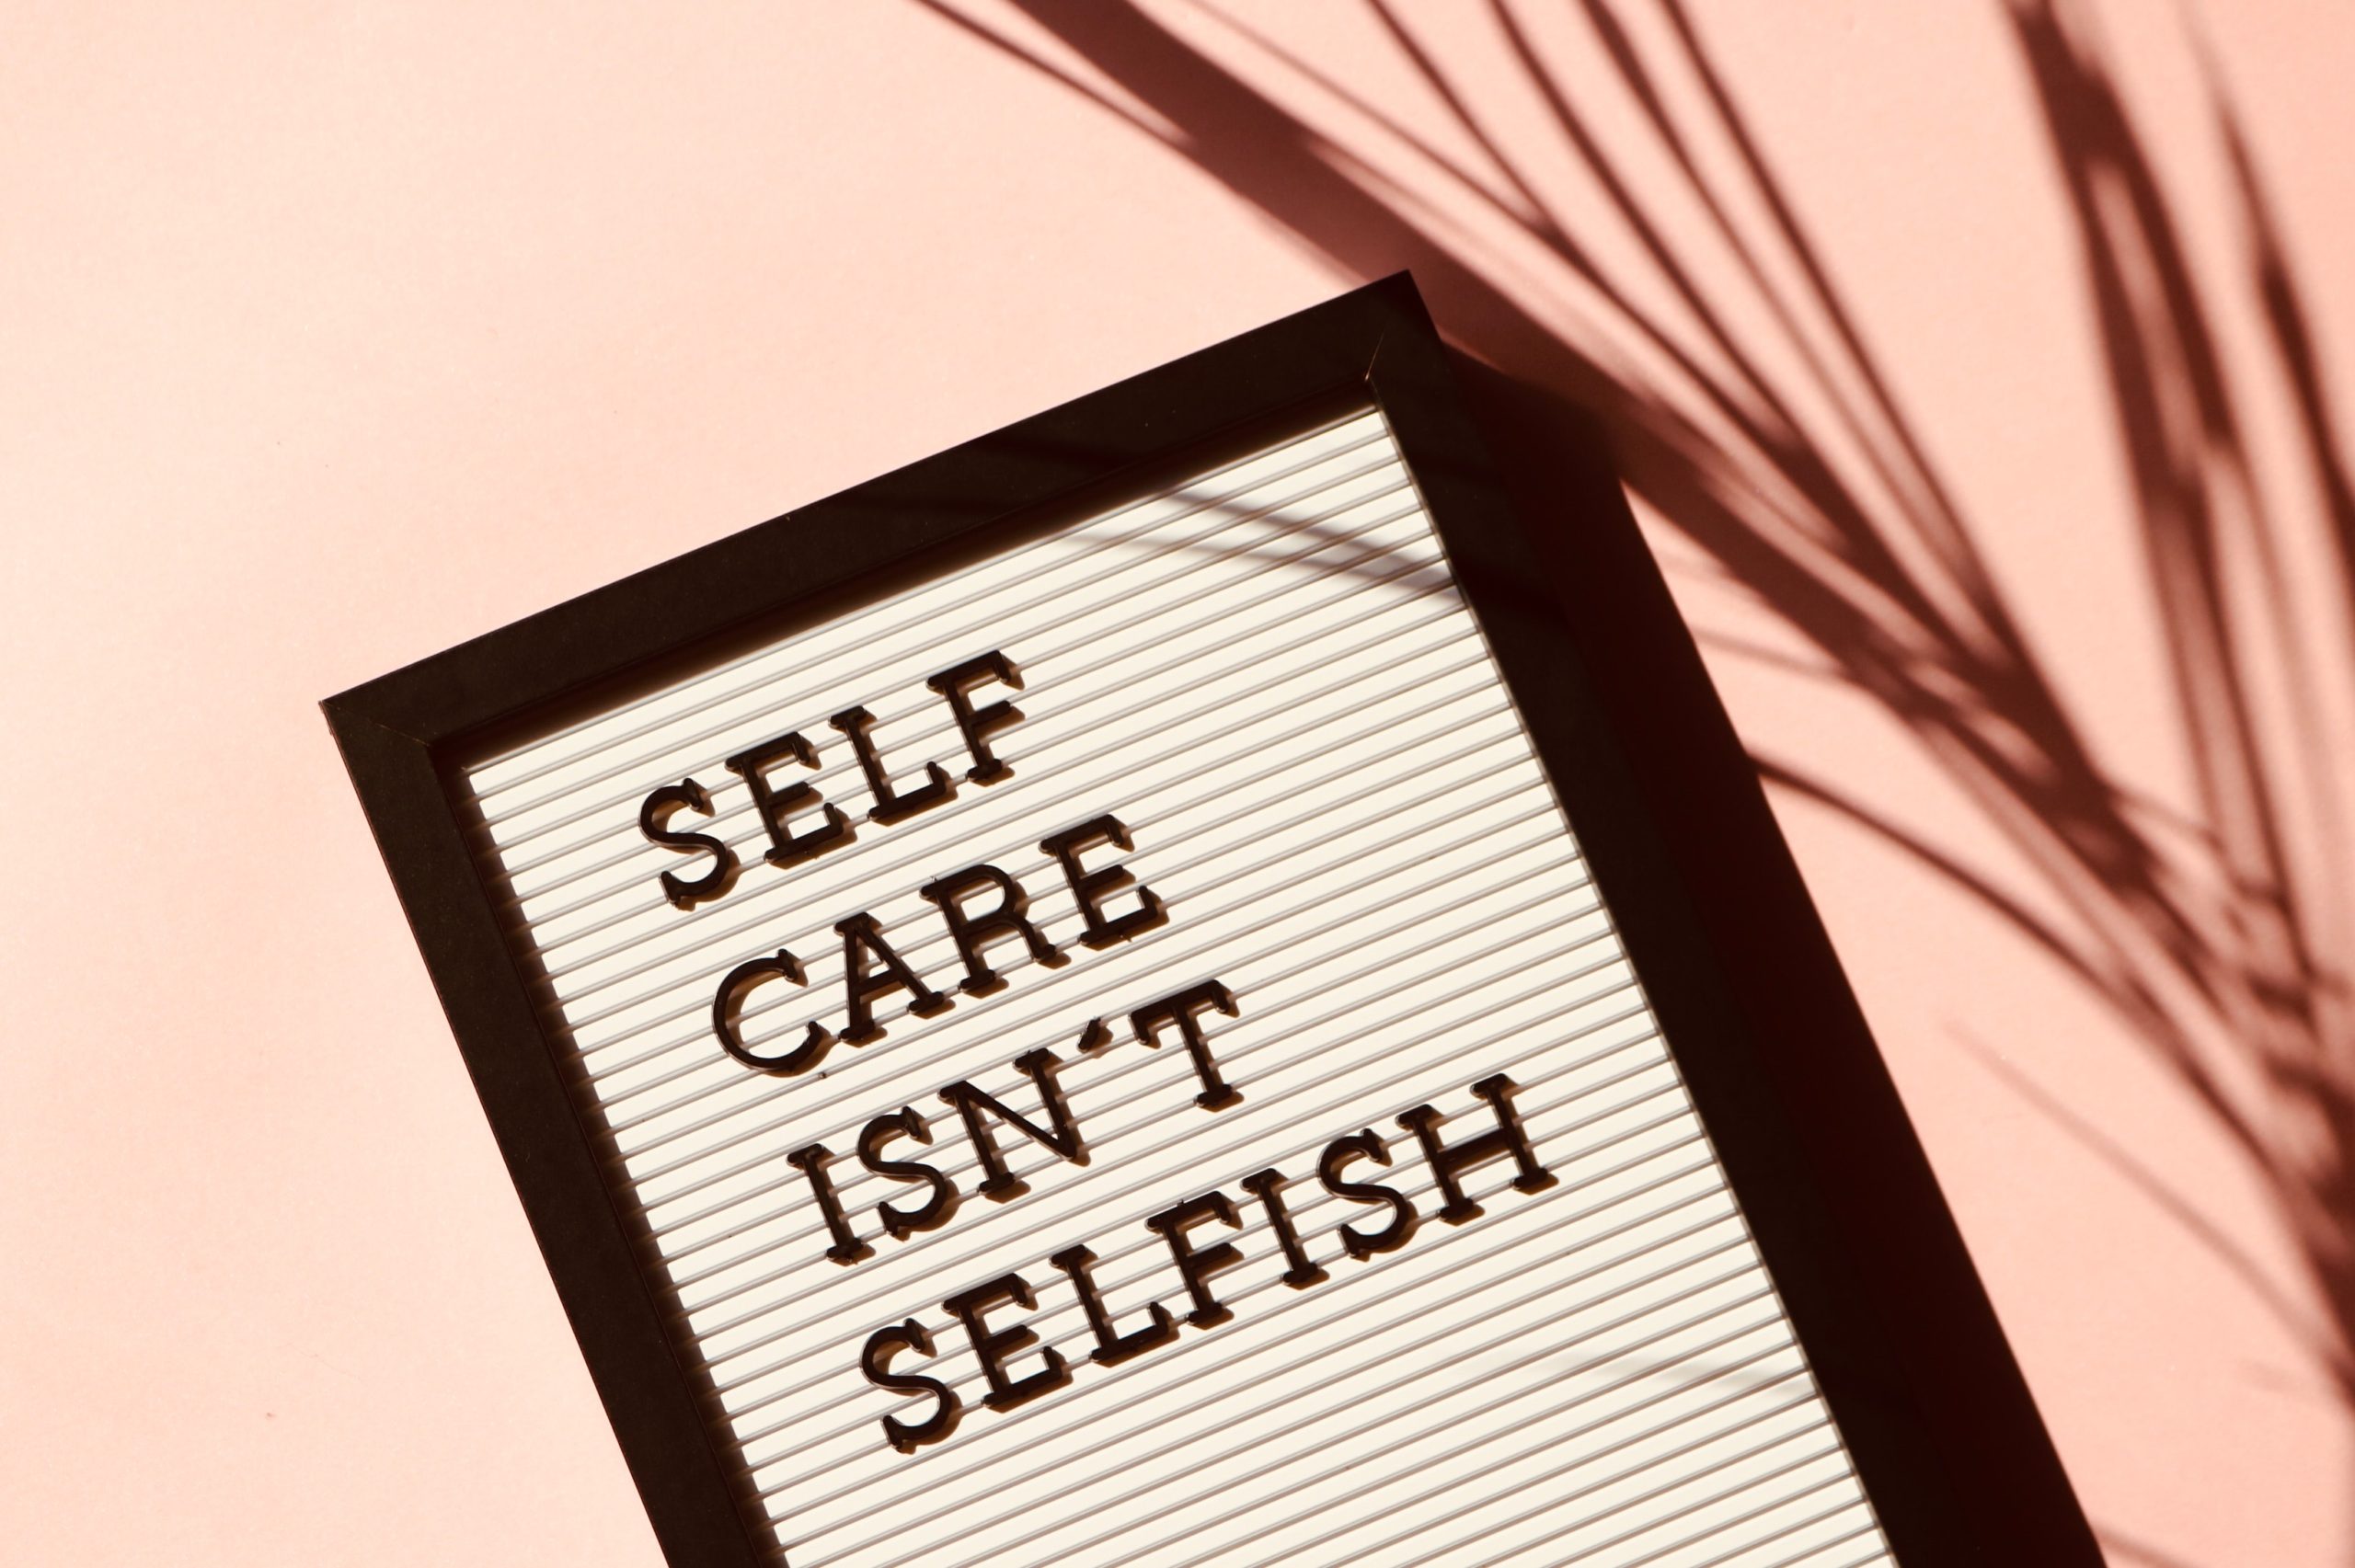 Self-care isn’t selfish.